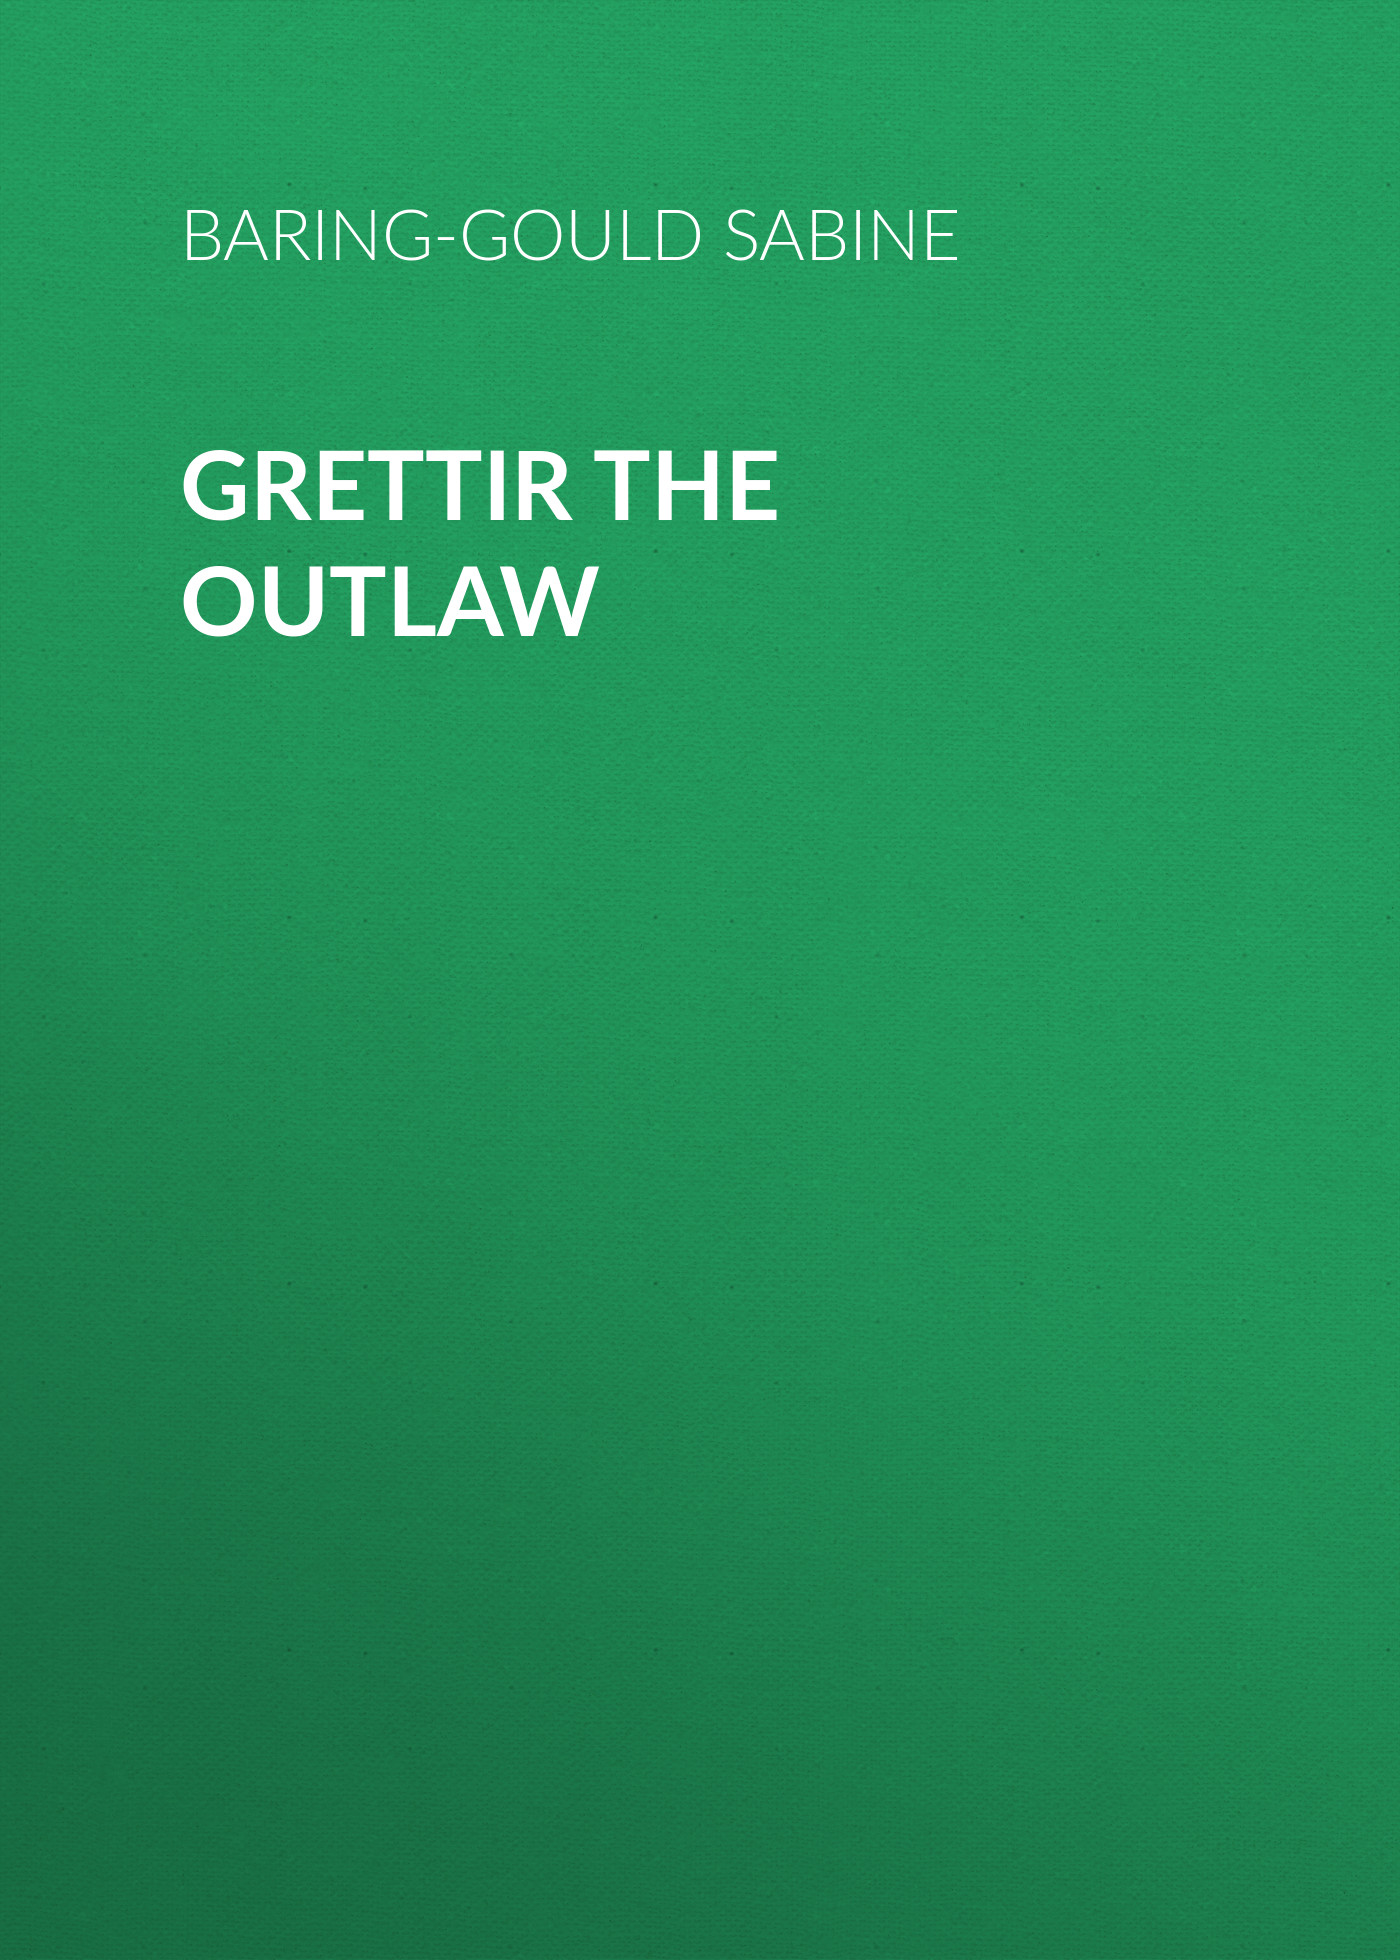 Книга Grettir the Outlaw из серии , созданная Sabine Baring-Gould, может относится к жанру Зарубежная старинная литература, Зарубежная классика. Стоимость электронной книги Grettir the Outlaw с идентификатором 24177164 составляет 0 руб.